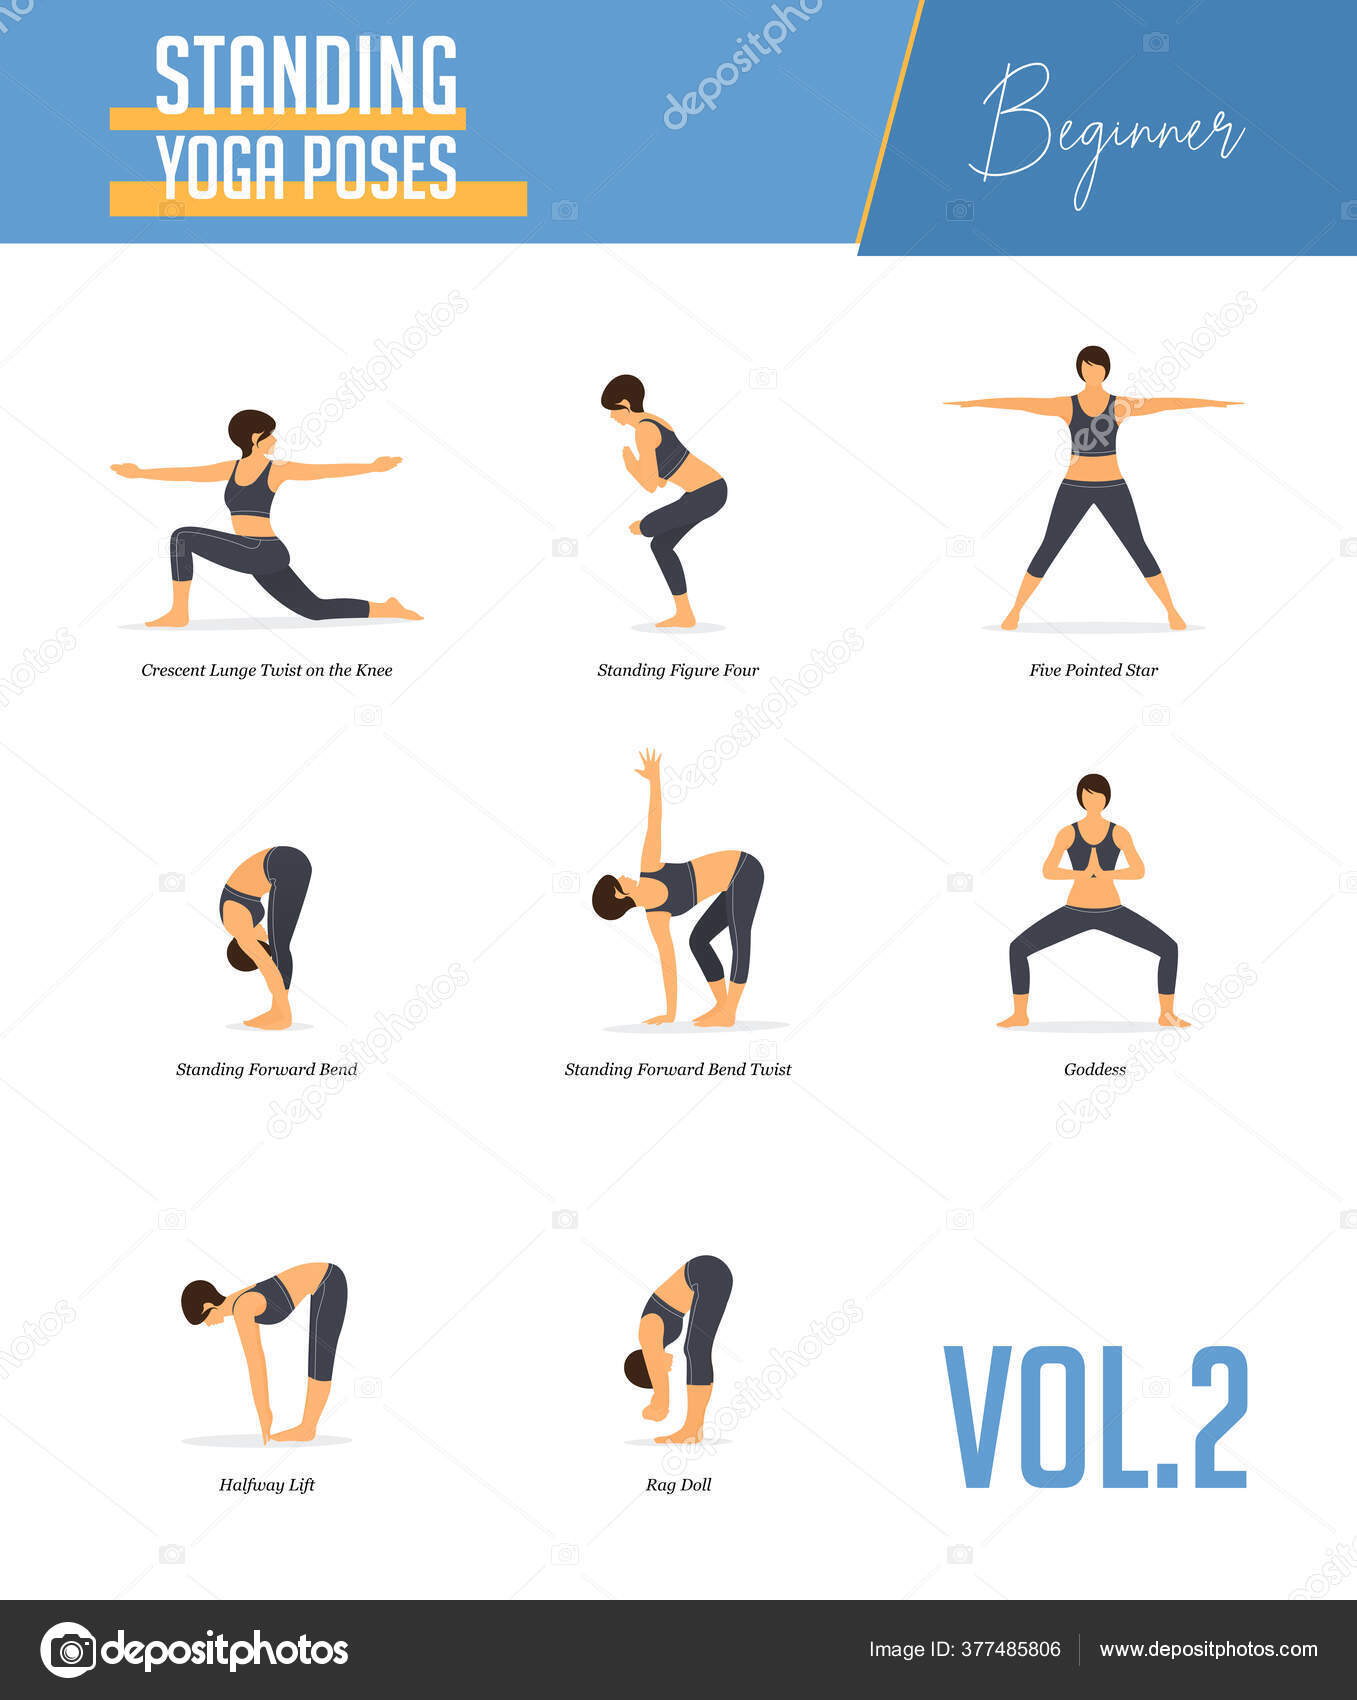 Yoga Pose: Standing Bow | Pocket Yoga